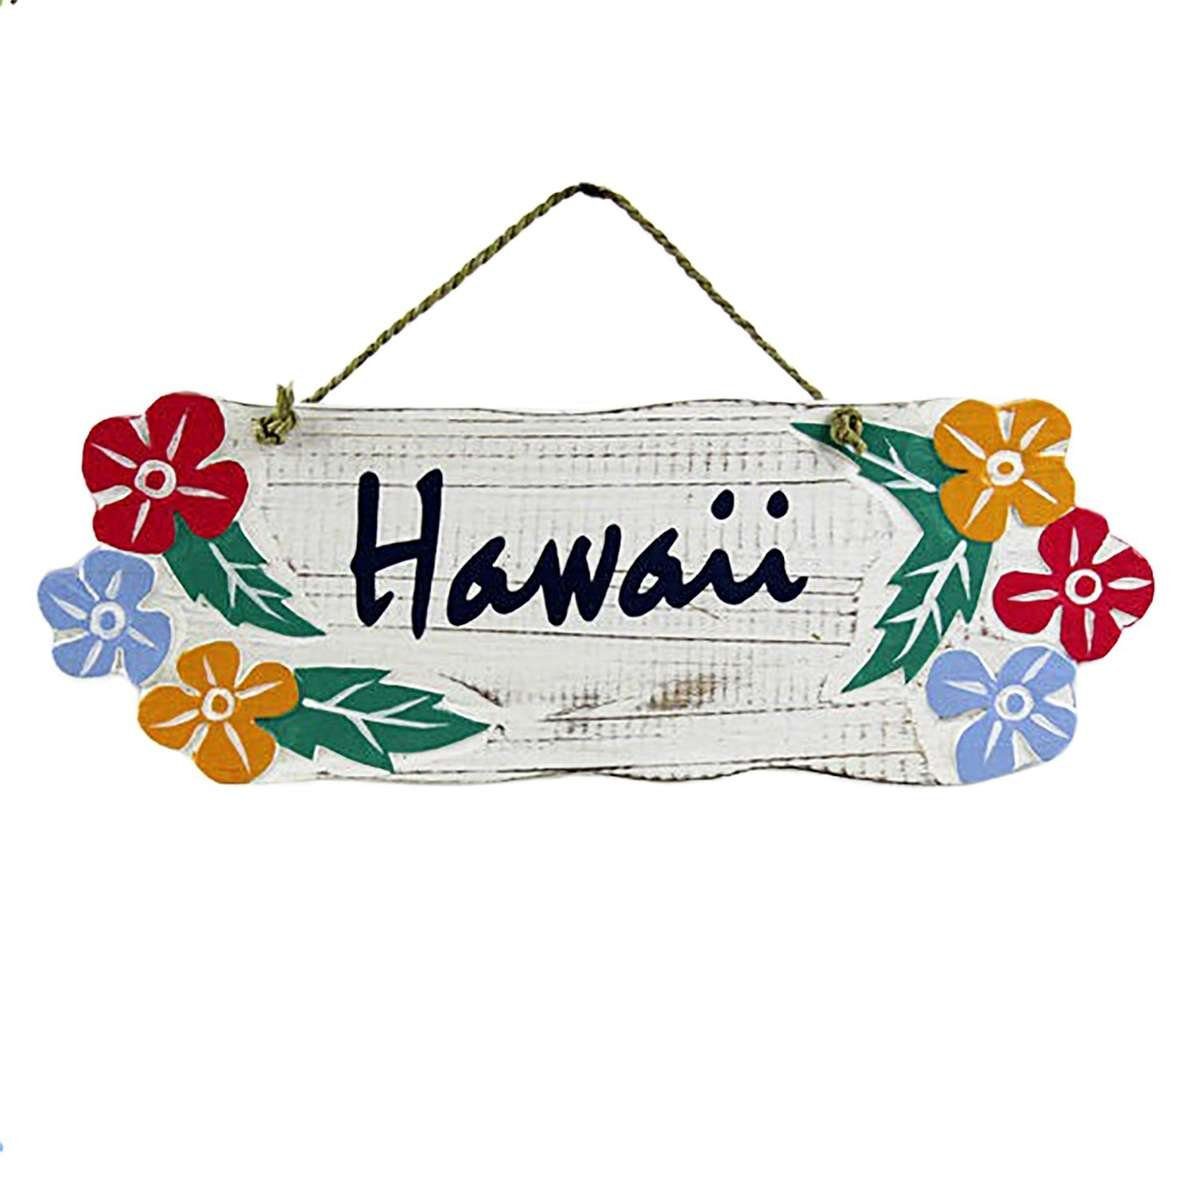 Hawaii orientalisch Handarbeit Schilder St), (1 bunt W3, Galerie Hawaii Wandbild Oriental Weiß